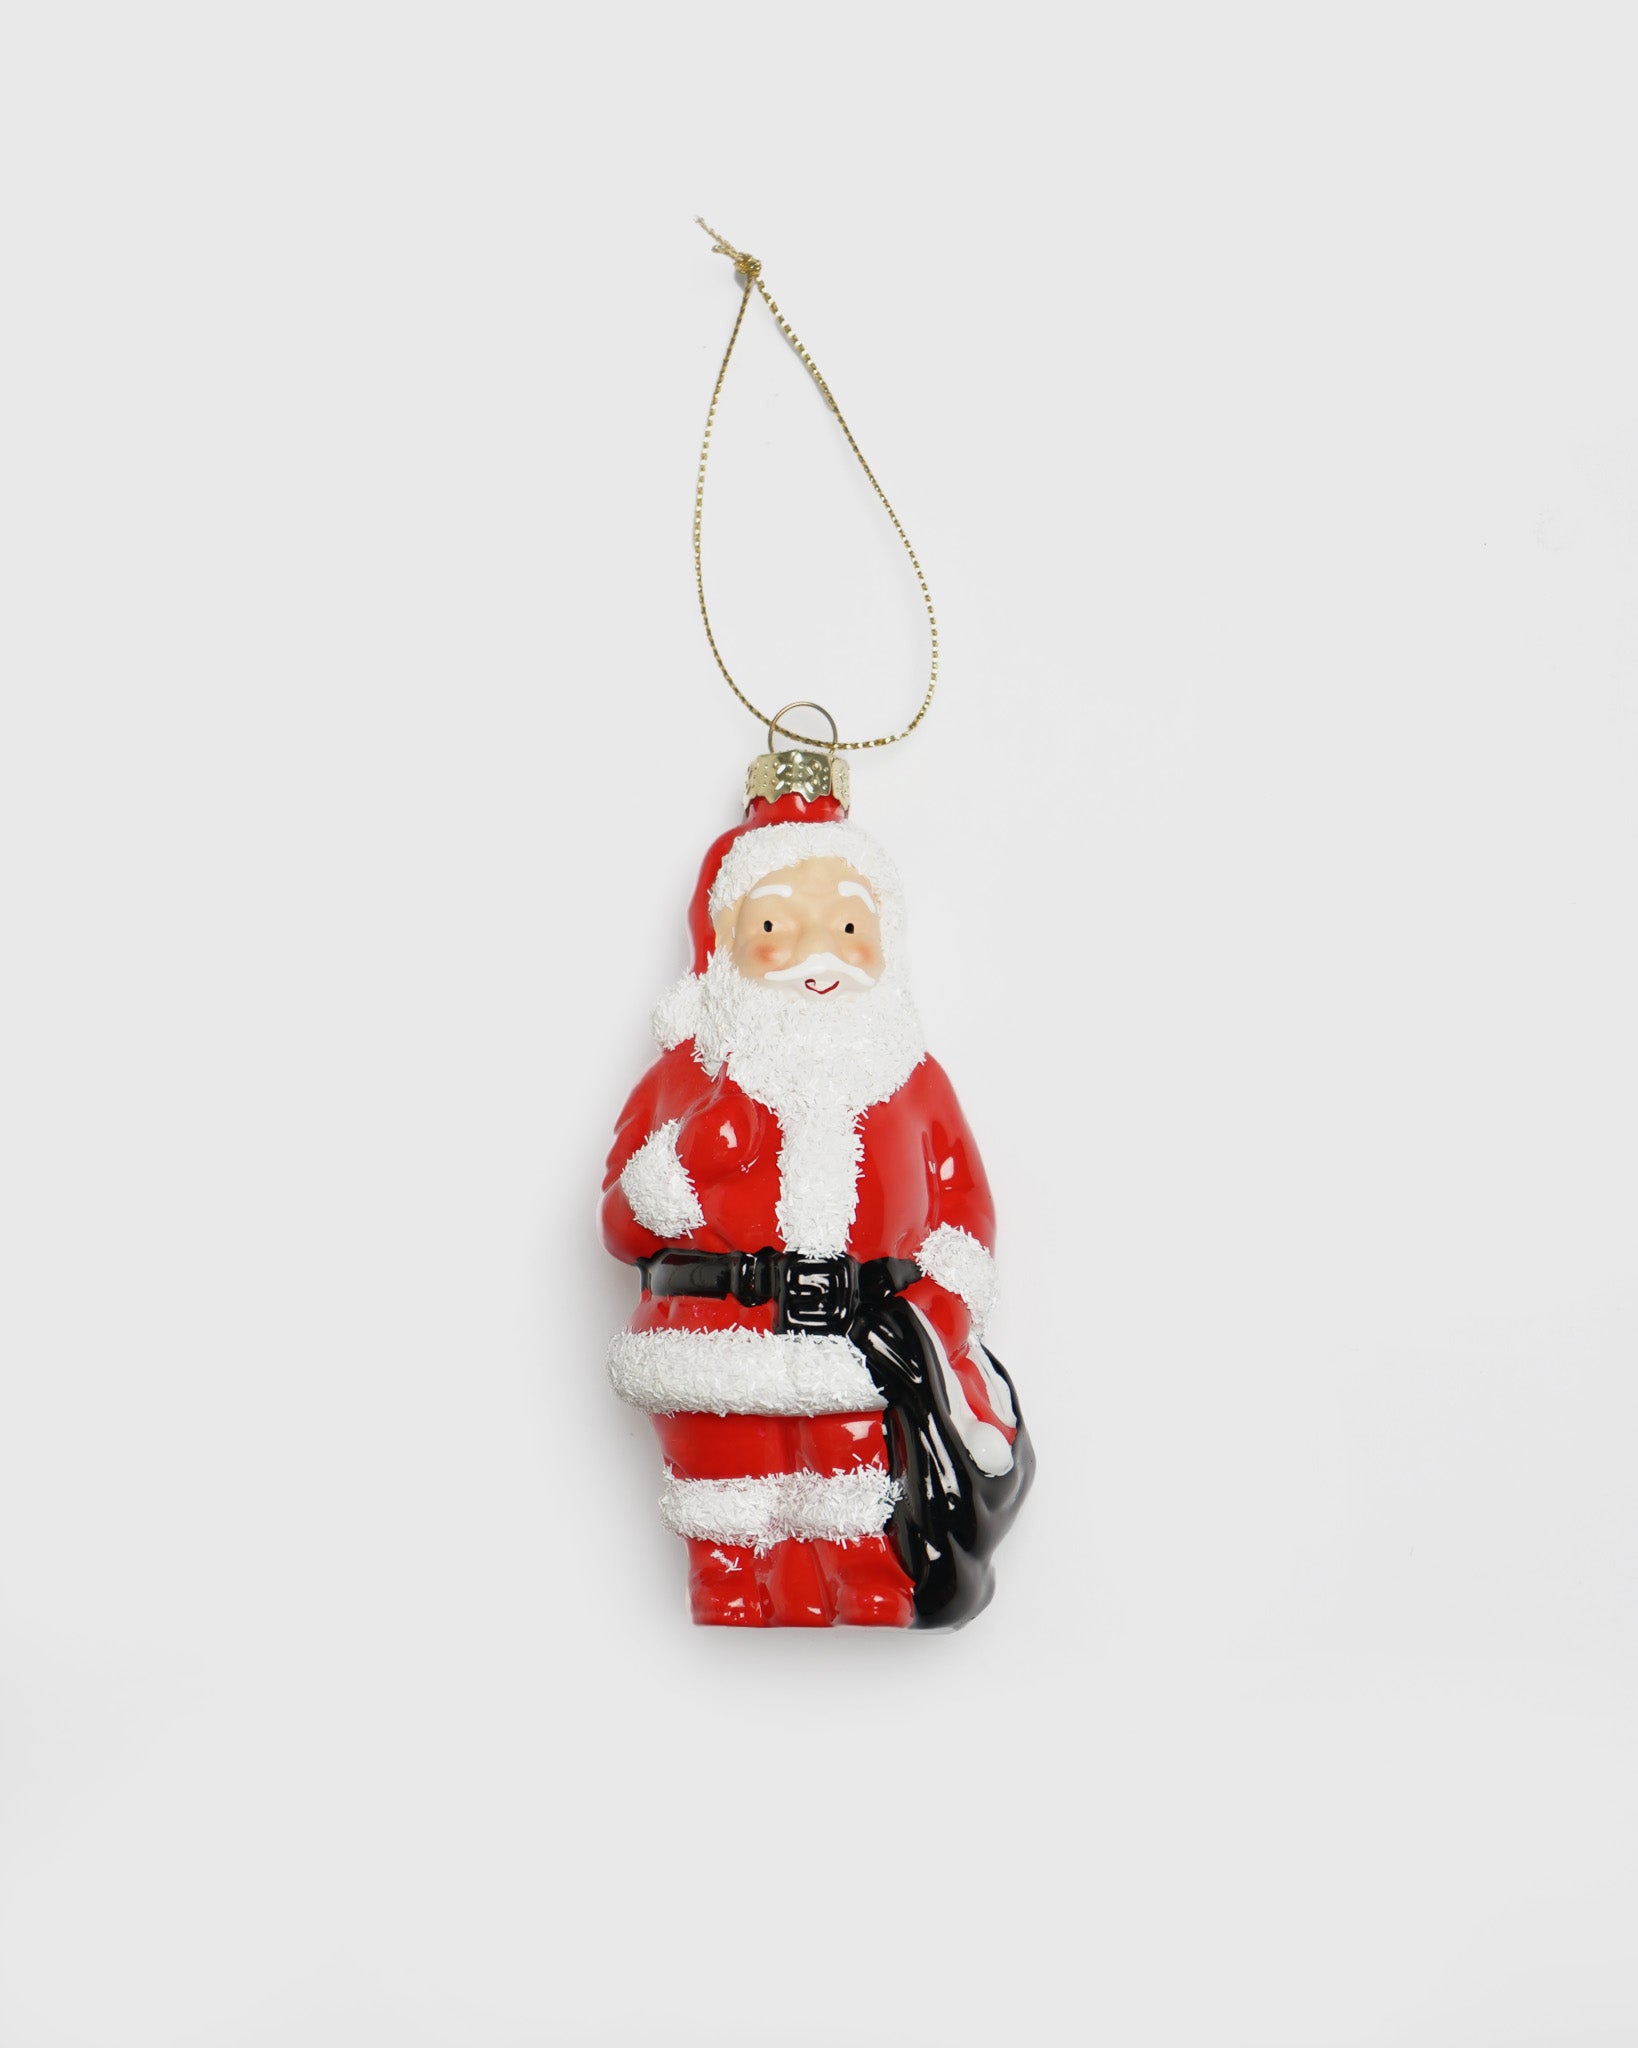 Santa Blow Mold Ornament